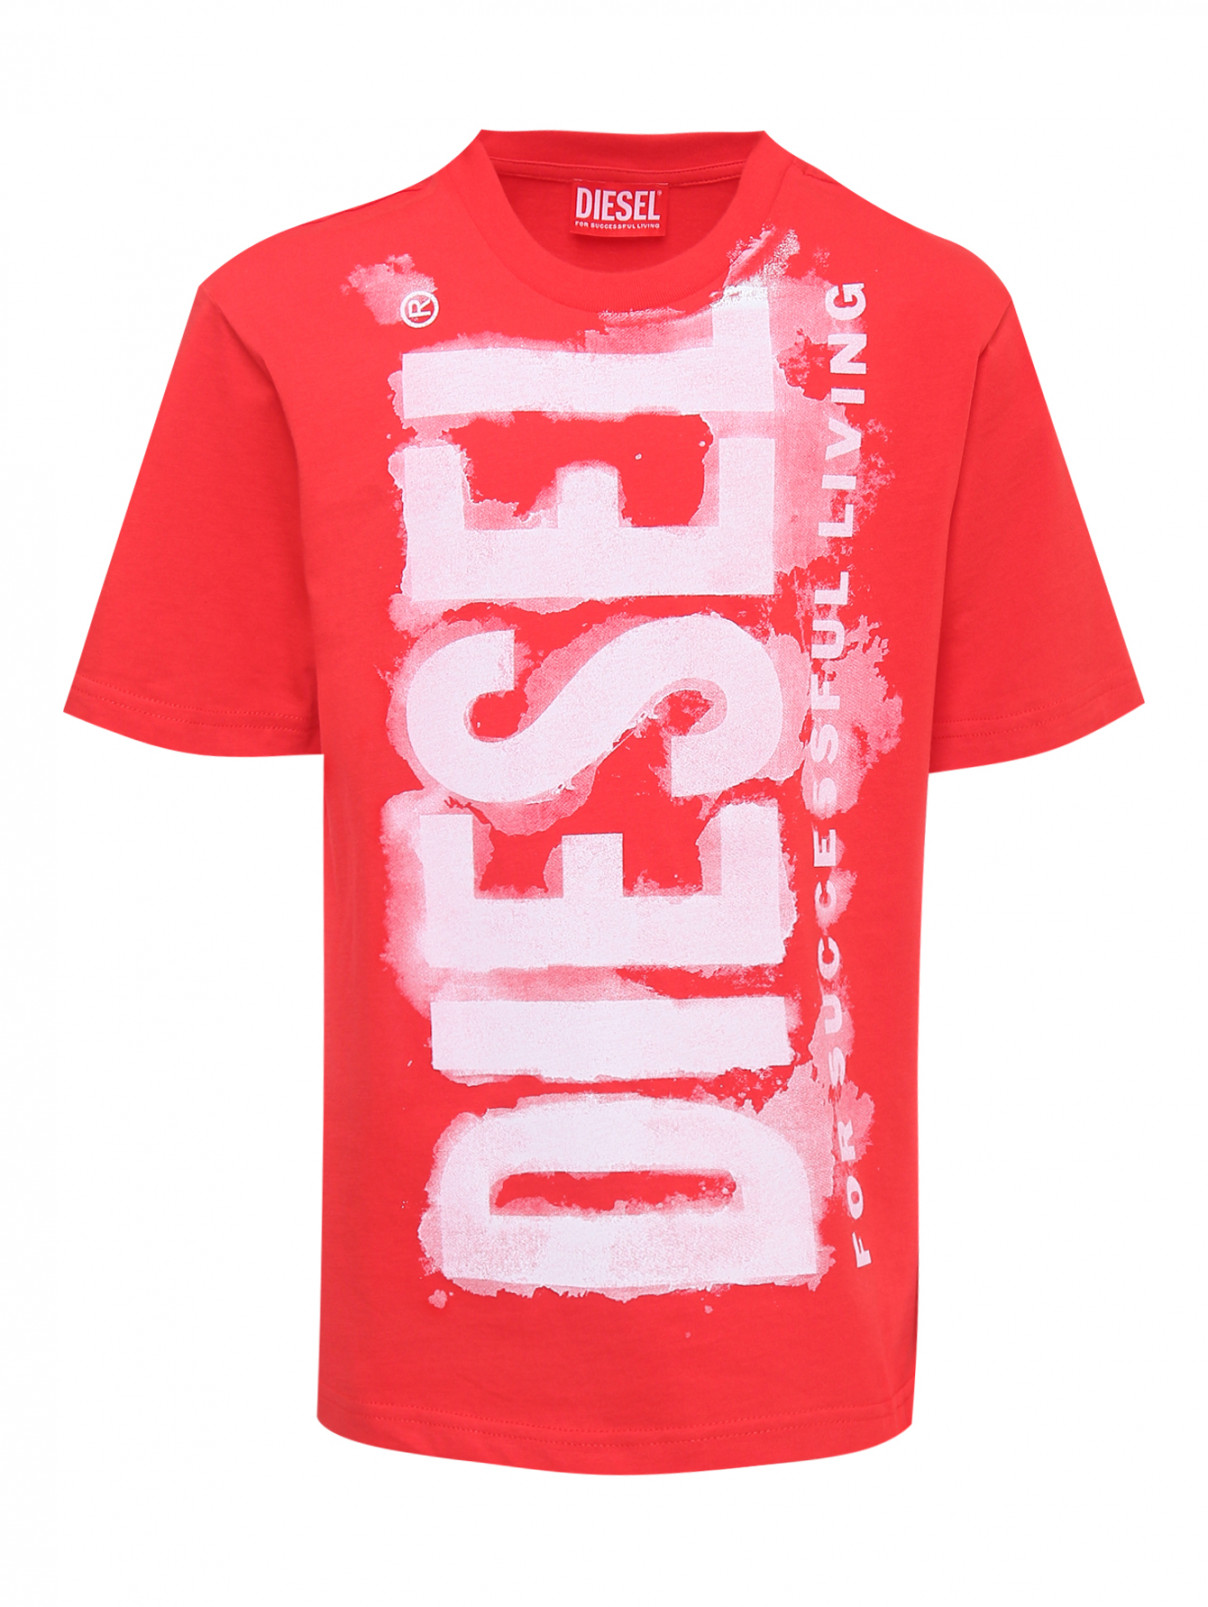 Хлопковая футболка с принтом Diesel  –  Общий вид  – Цвет:  Красный